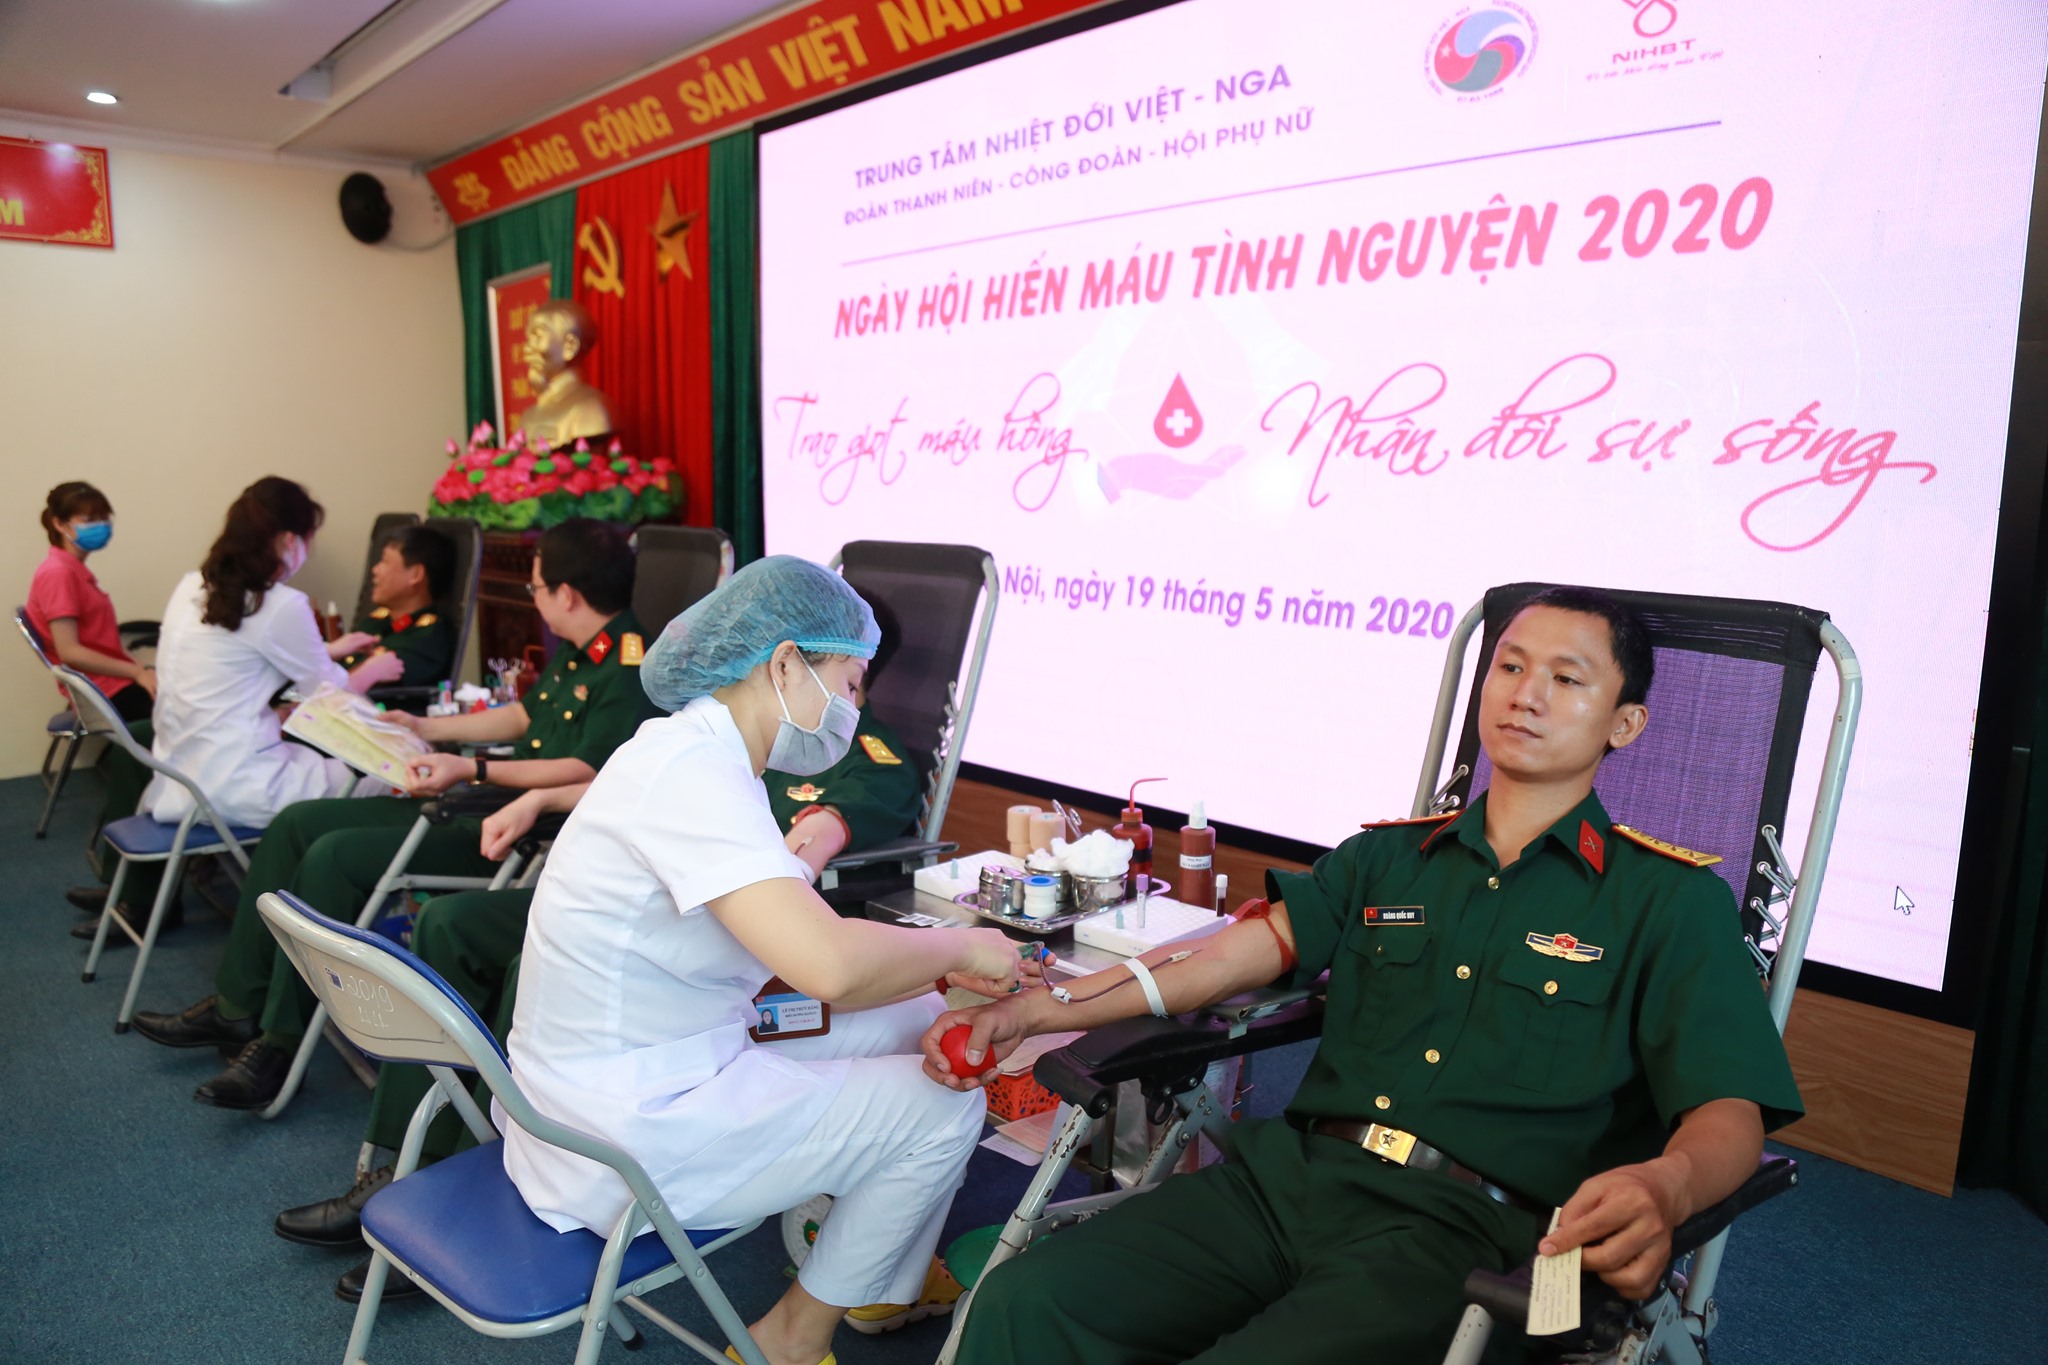 Trung tâm Nhiệt đới Việt-Nga tổ chức hiến máu tình nguyện